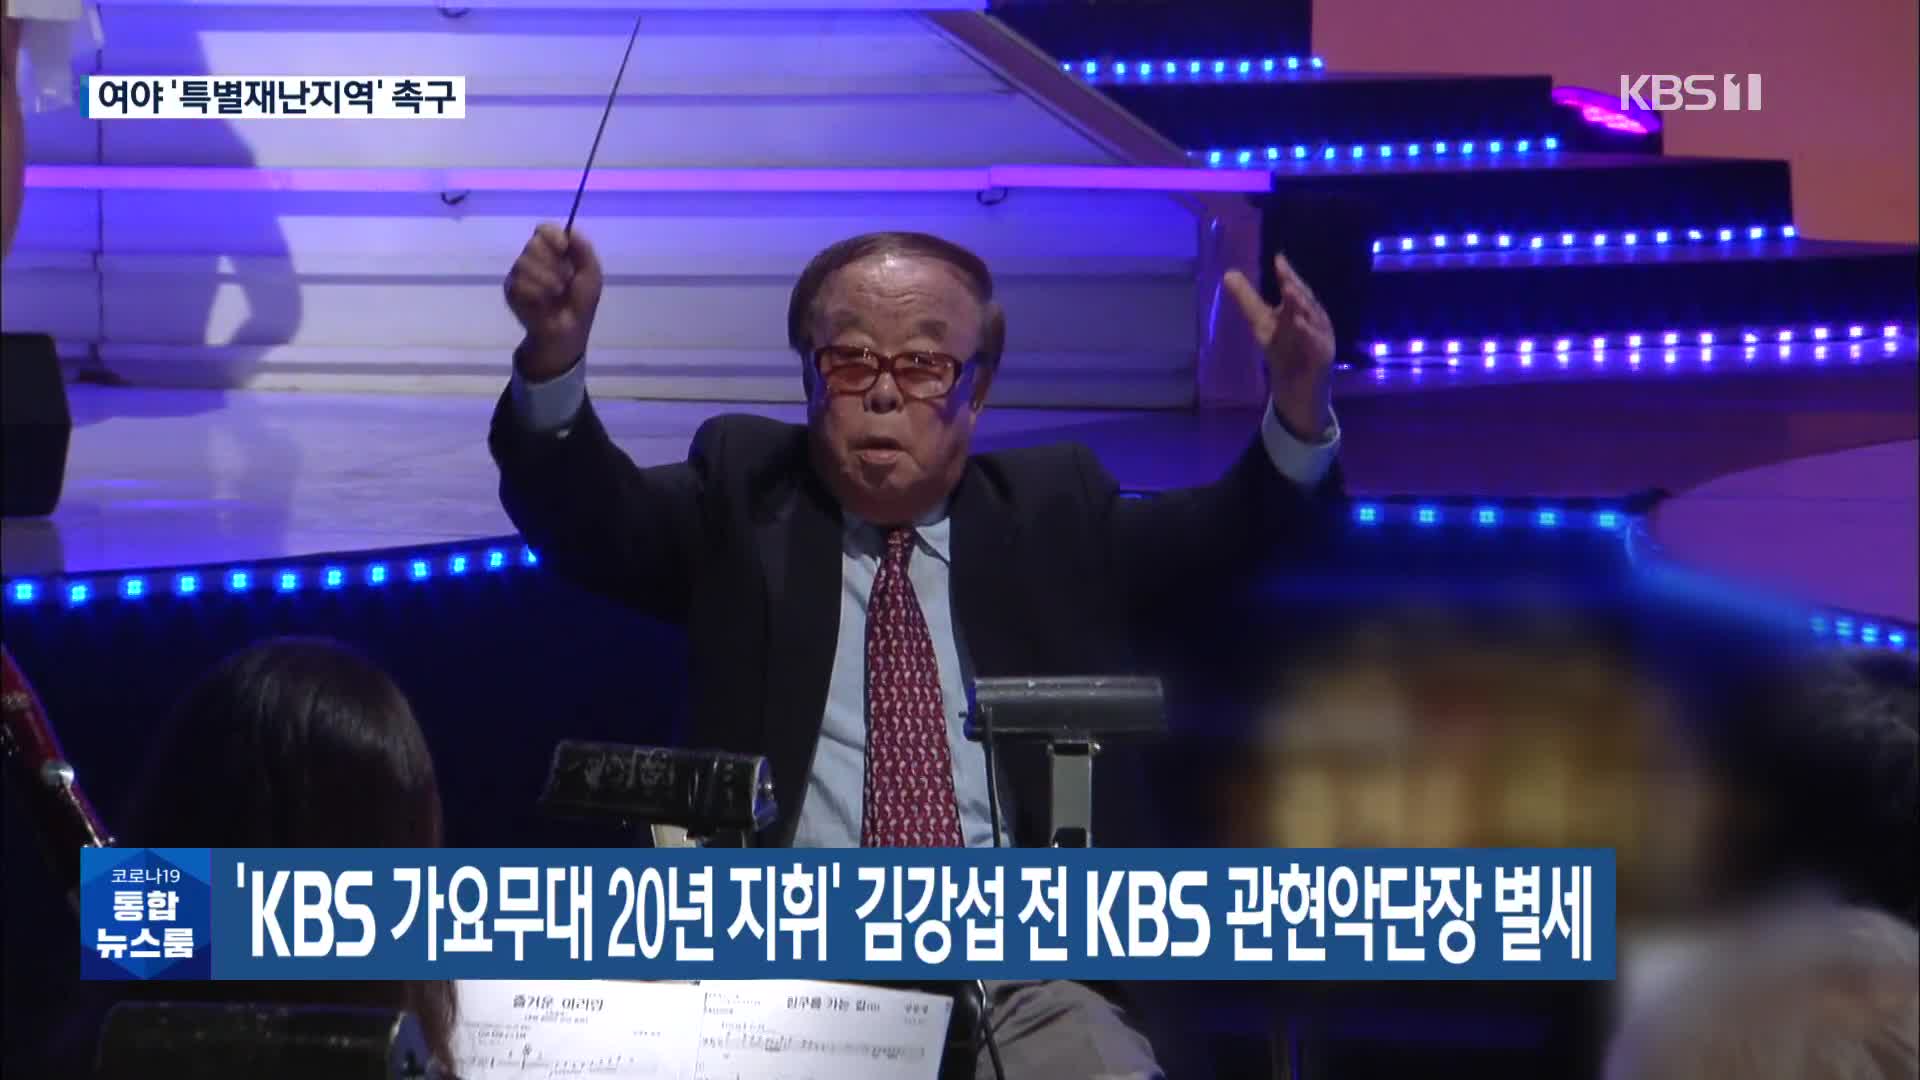 ‘KBS 가요무대 20년 지휘’ 김강섭 전 KBS 관현악단장 별세